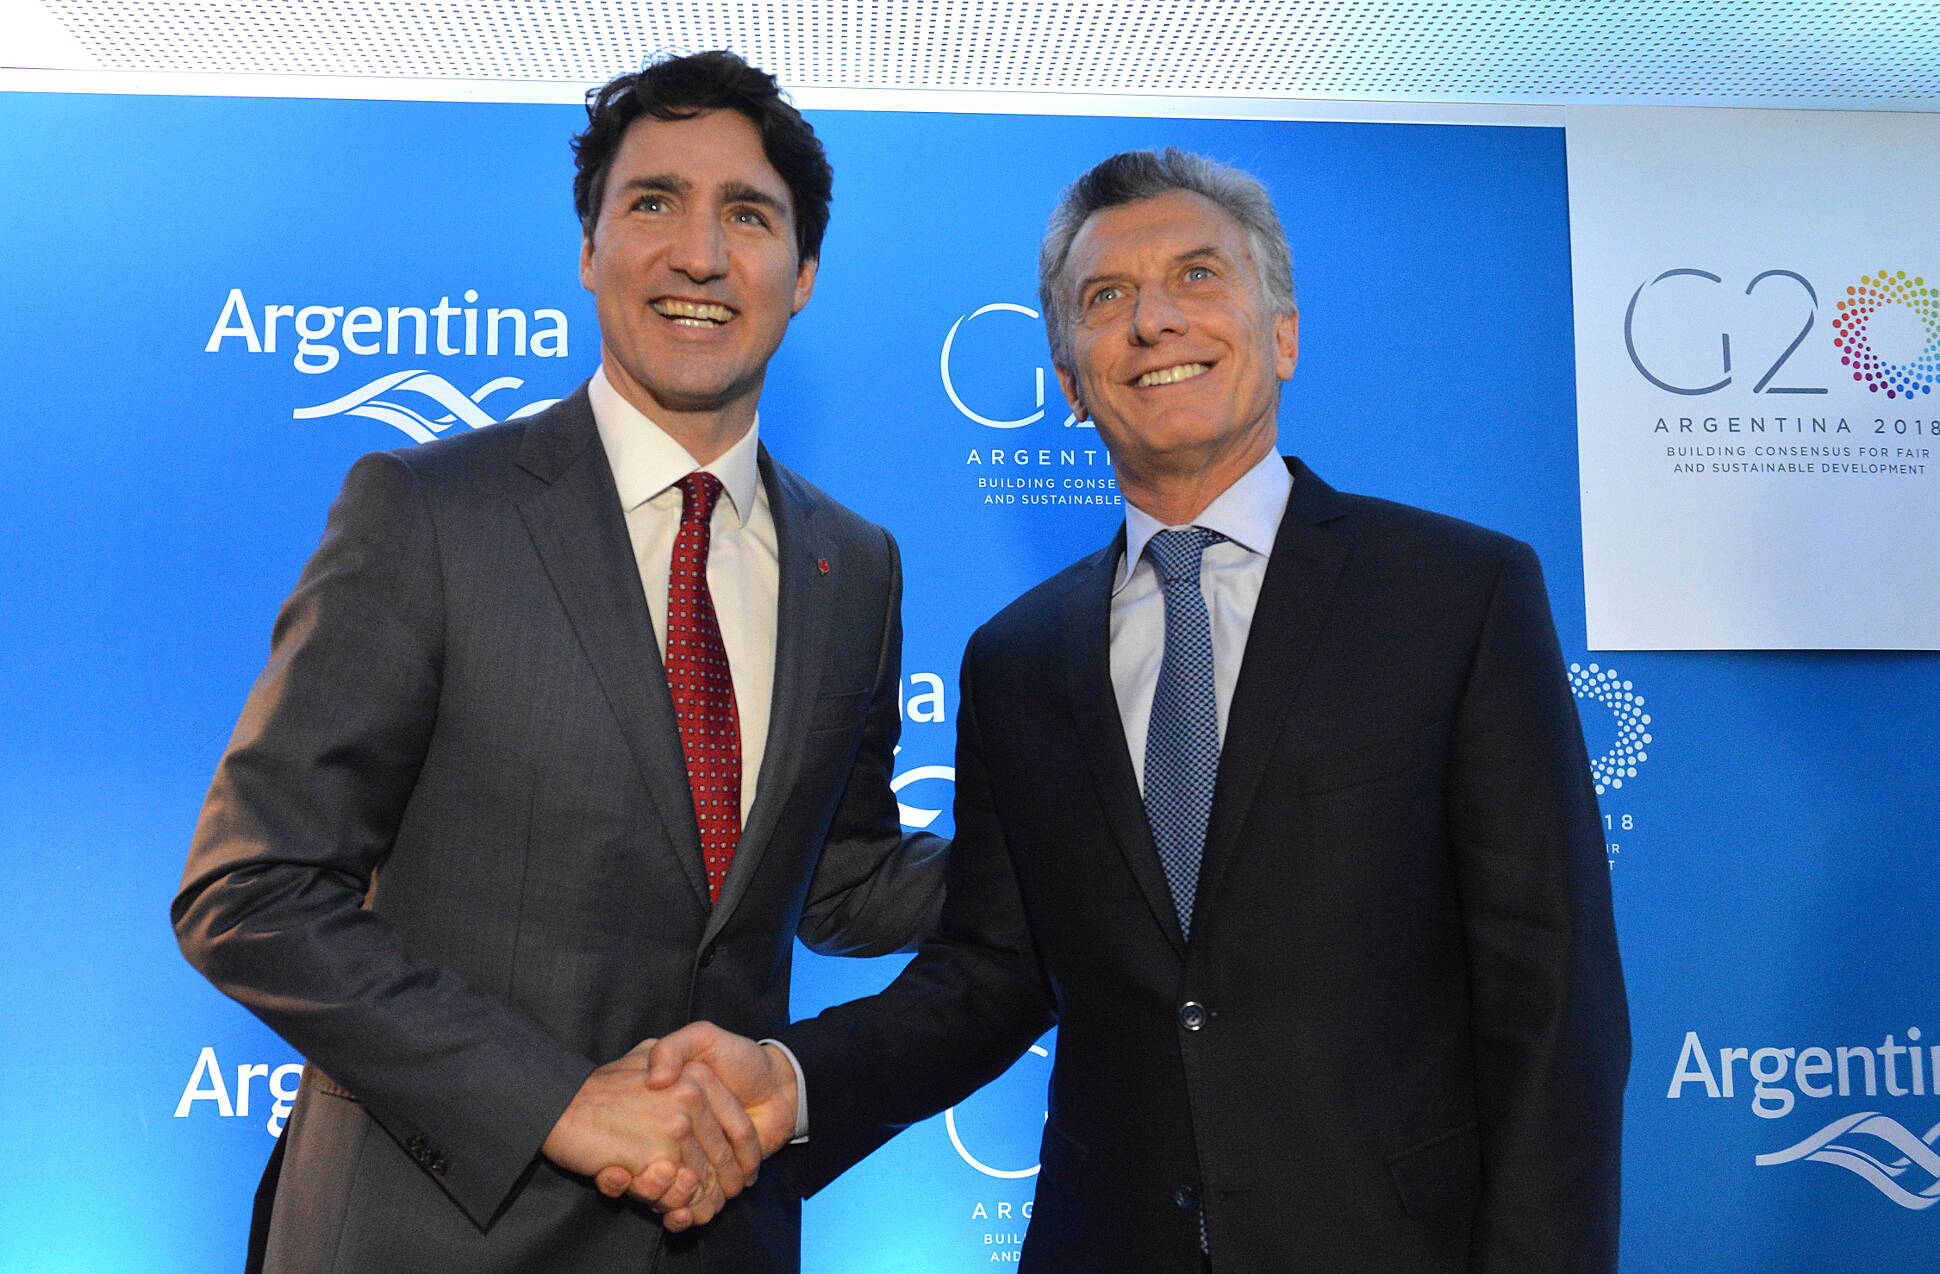 El Presidente mantuvo un encuentro con el primer ministro de Canadá